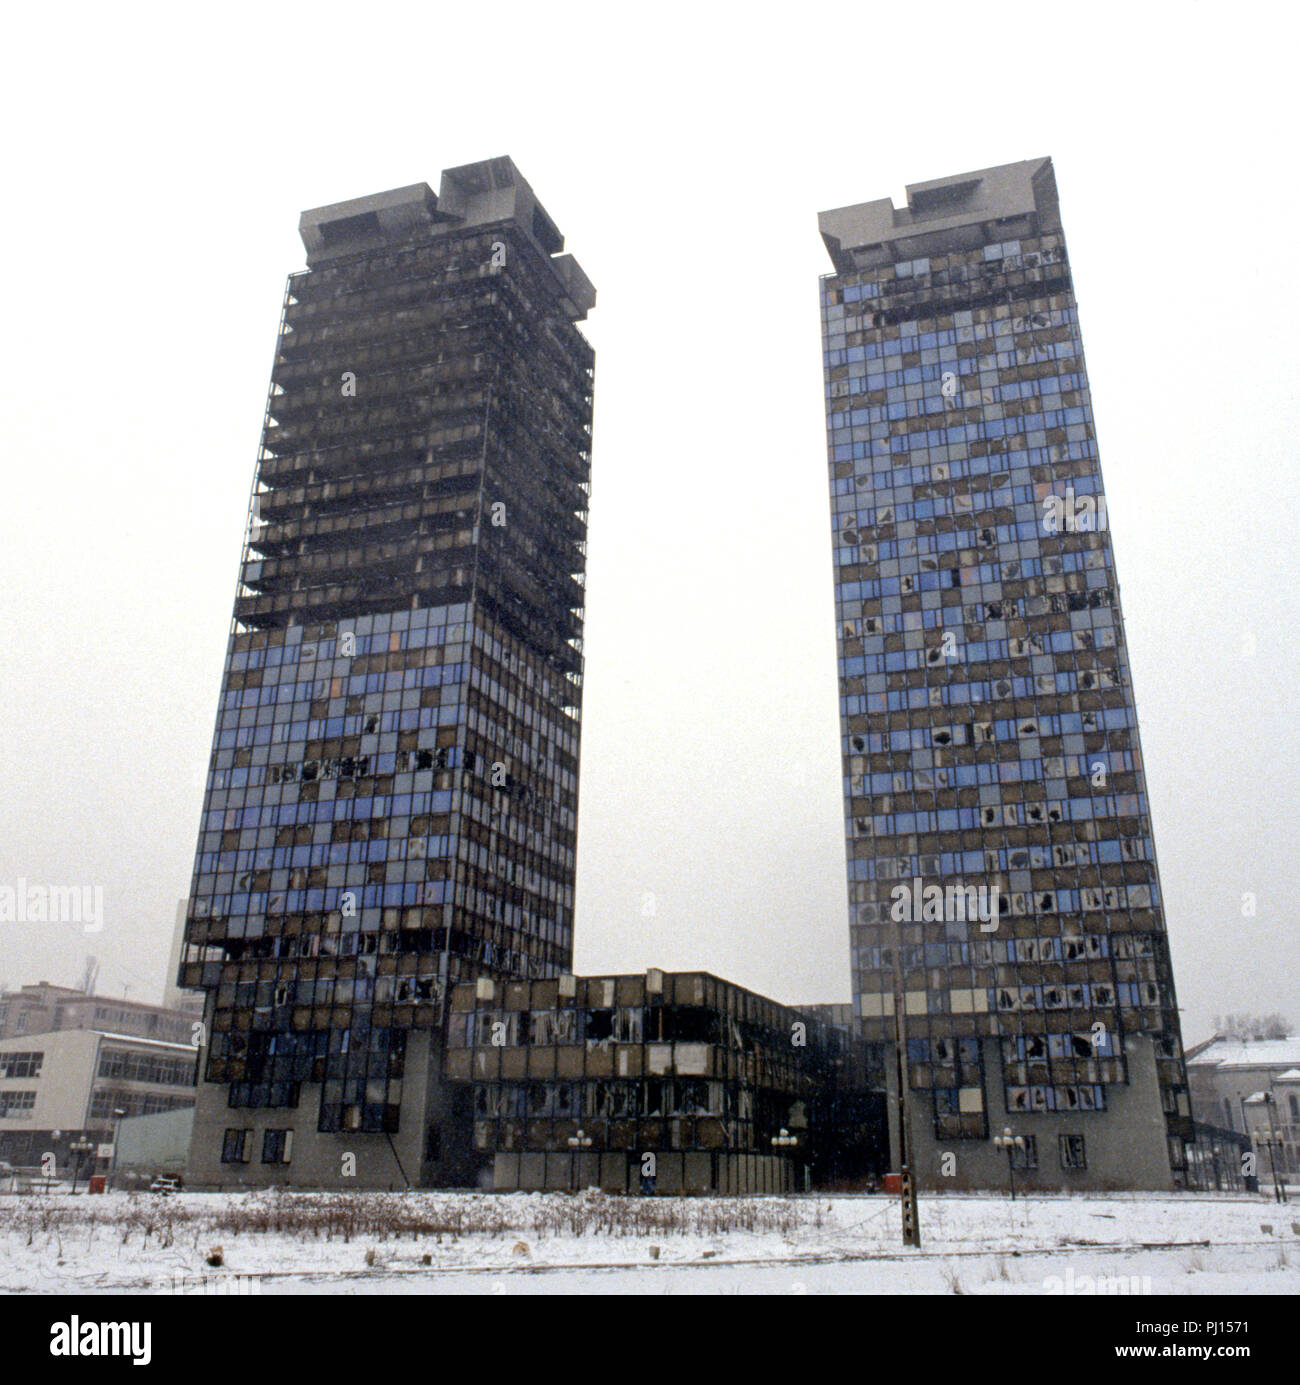 5 Marzo 1993 durante l'assedio di Sarajevo: il danneggiato dalla guerra Unis Twin Towers. Essi sono stati costruiti negli anni ottanta e sono stati soprannominato "omo' e 'Uzeir', un Serbo e un Bosniak, dopo i caratteri in una commedia di radio. Foto Stock